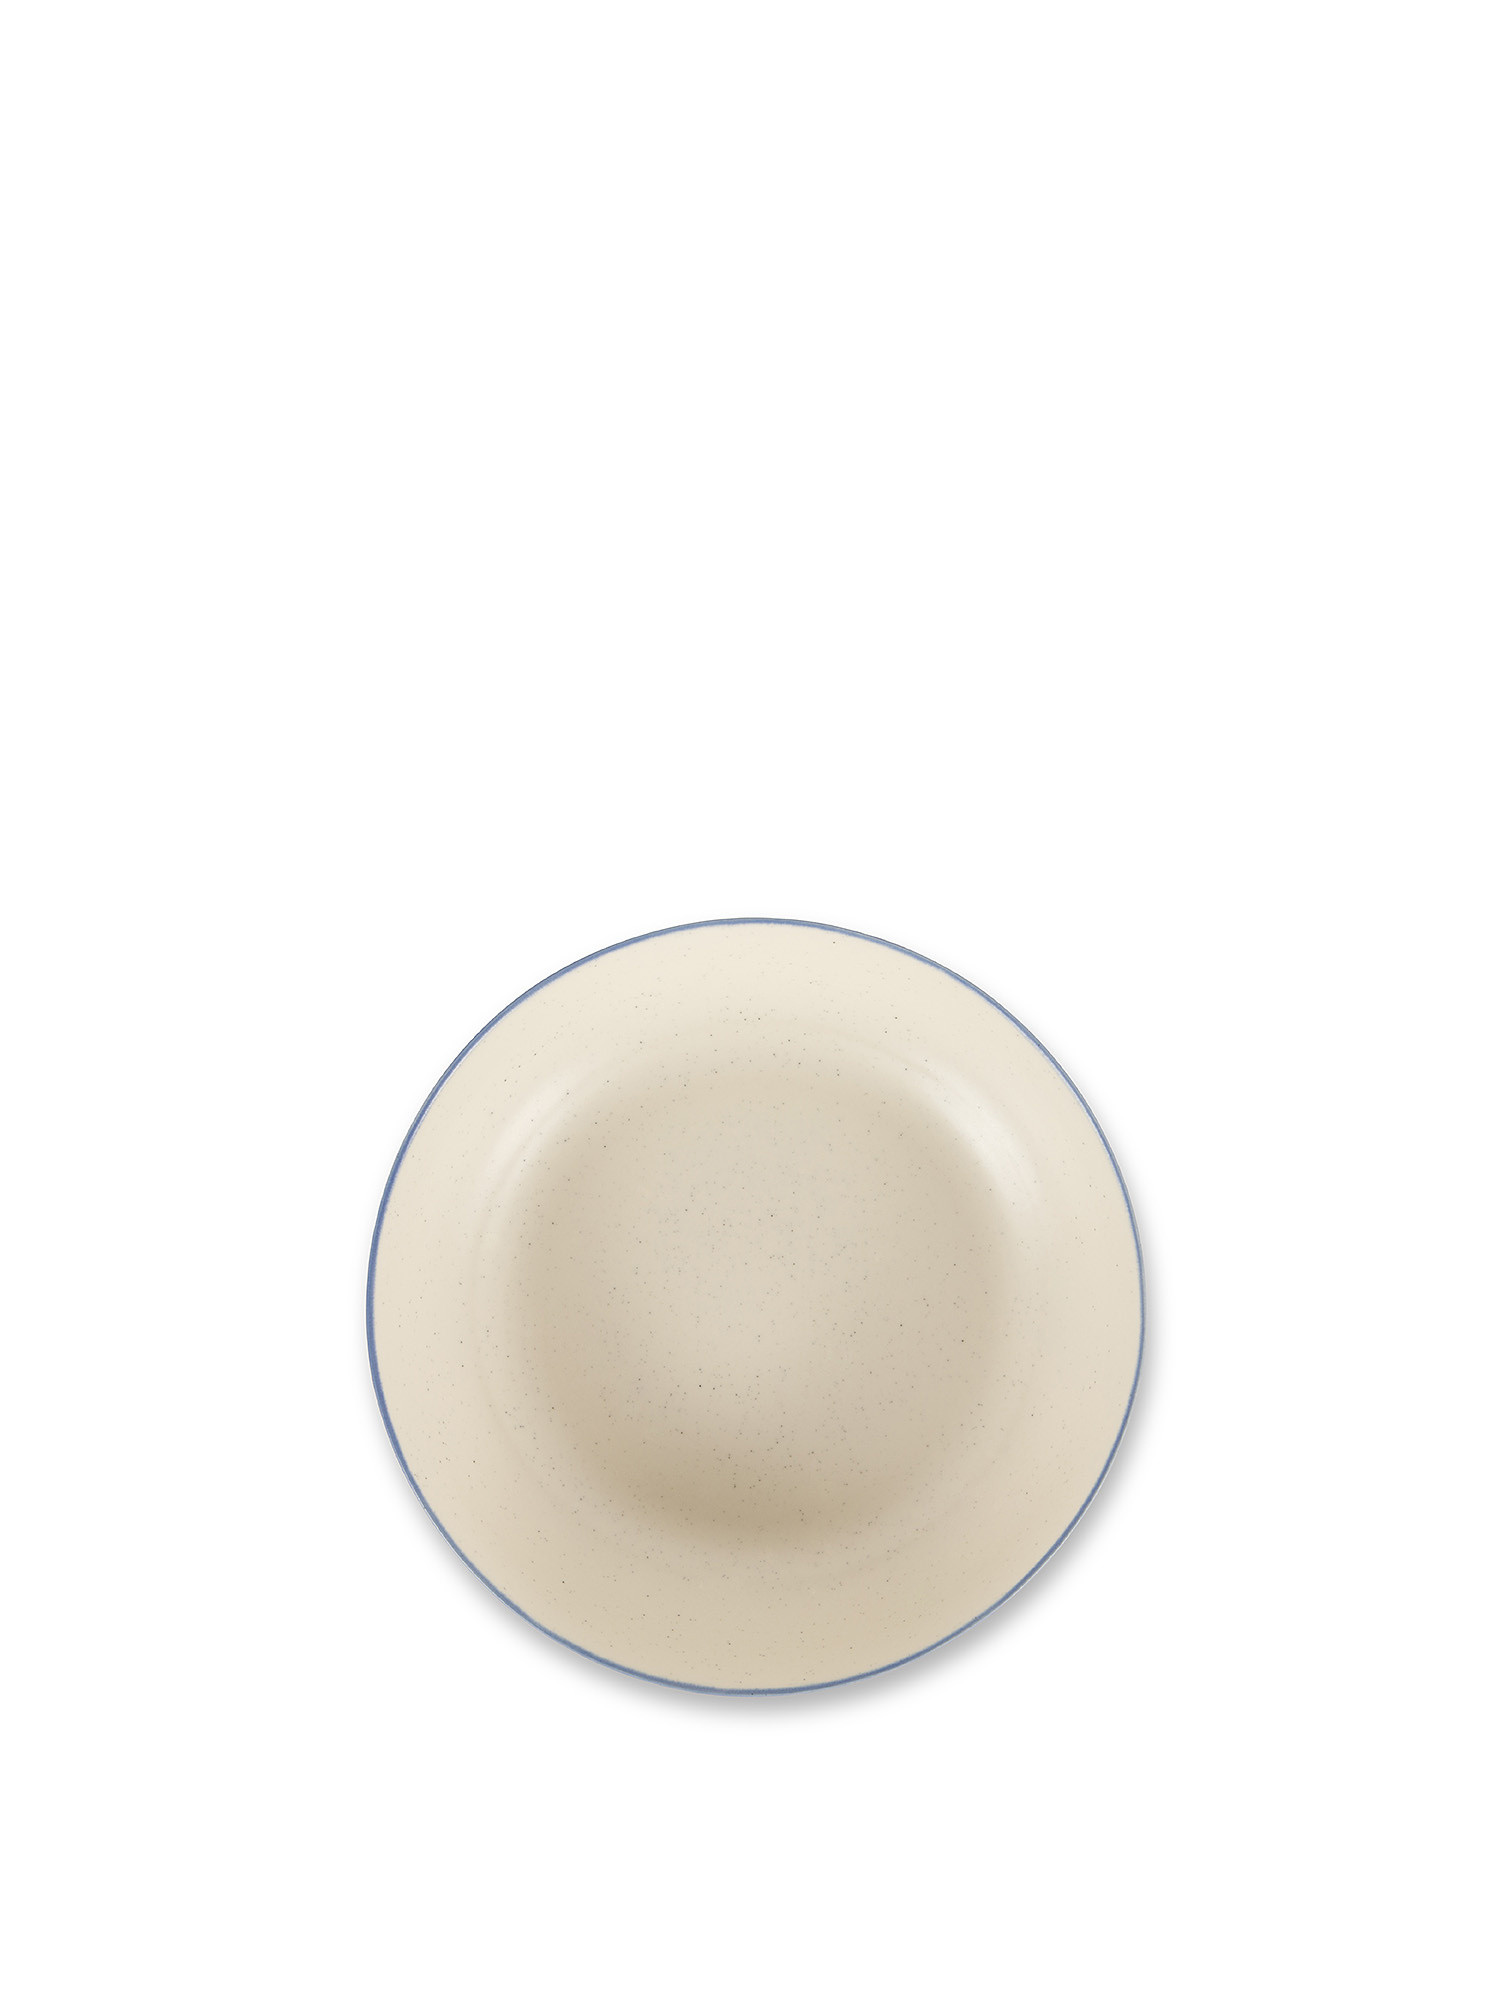 Piatto fondo ceramica con bordino, Bianco, large image number 1